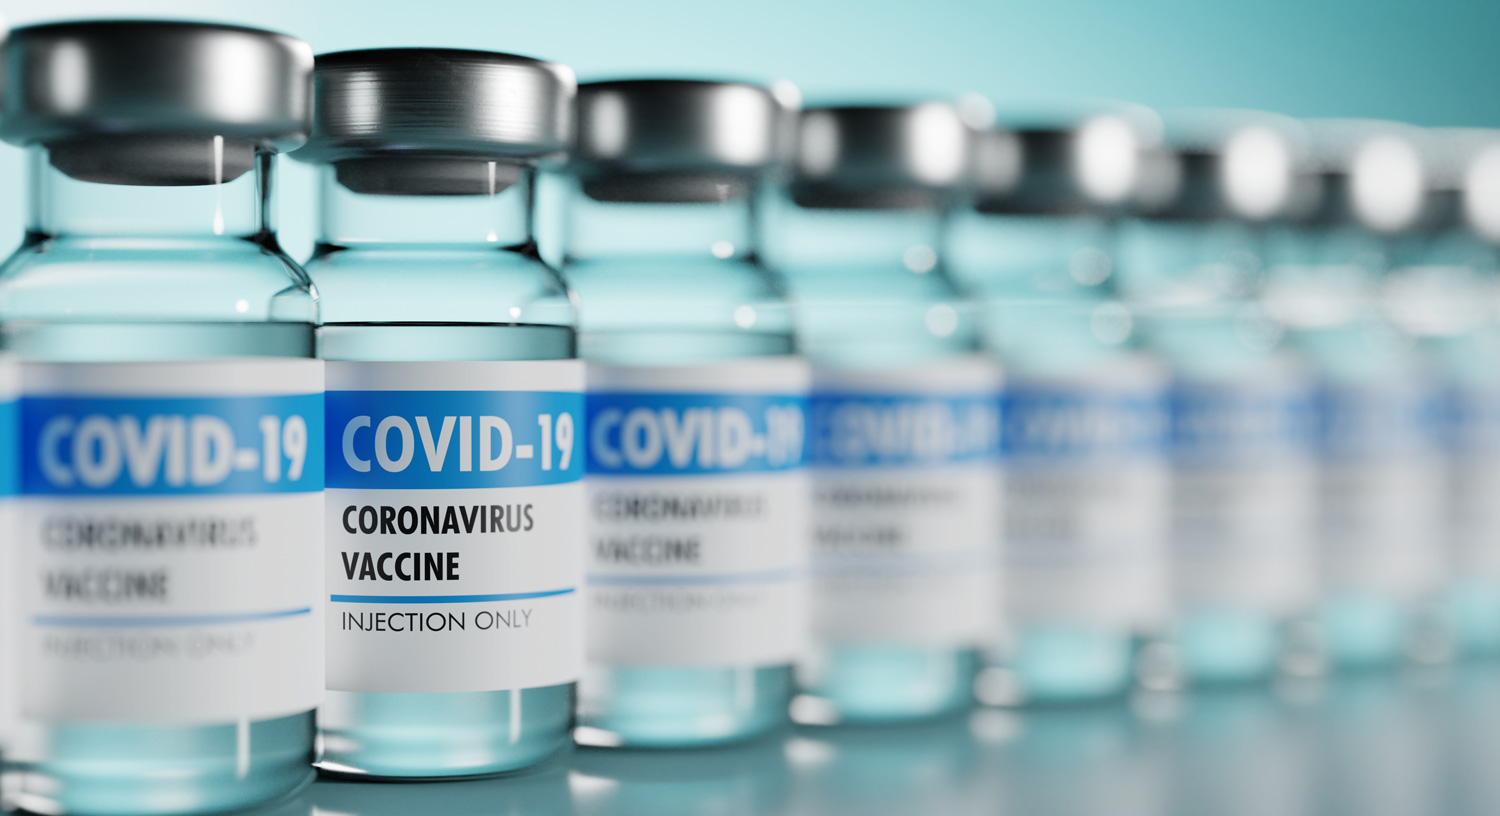 bottles of Coronavirus vaccine